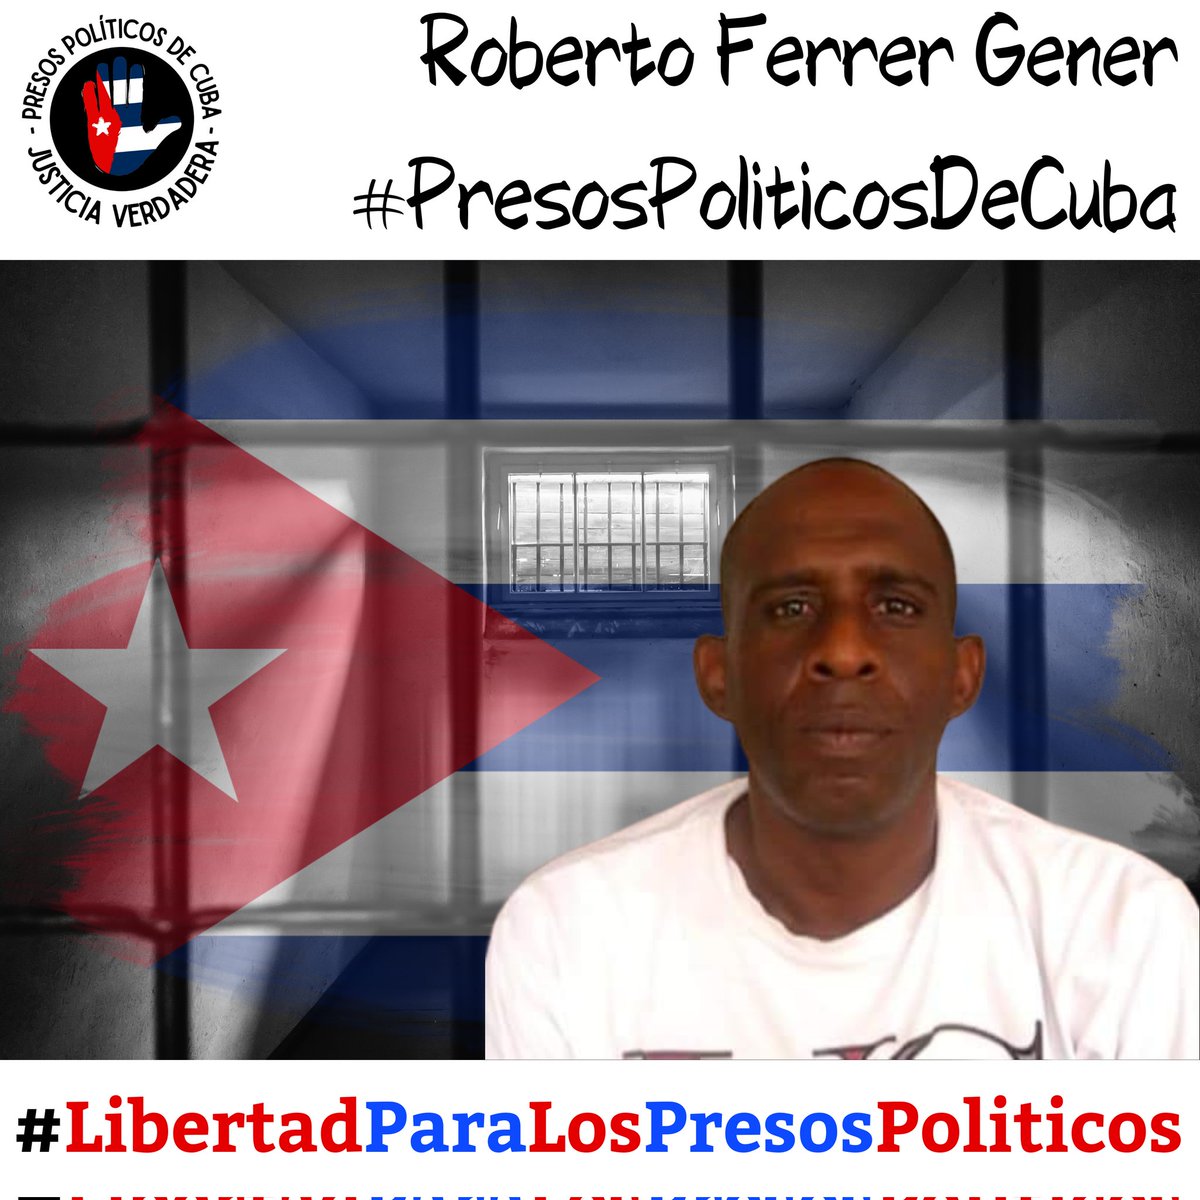 #Twittazo Libertad para Roberto Ferrer Gener. 
.
“Sin aire, la tierra muere. Sin libertad, como sin aire propio y esencial, nada vive.” -José Martí-
.
.
.
#HastaQueSeanLibres 
#PresosPoliticosDeCuba
#LibertadYJusticiaParaCuba